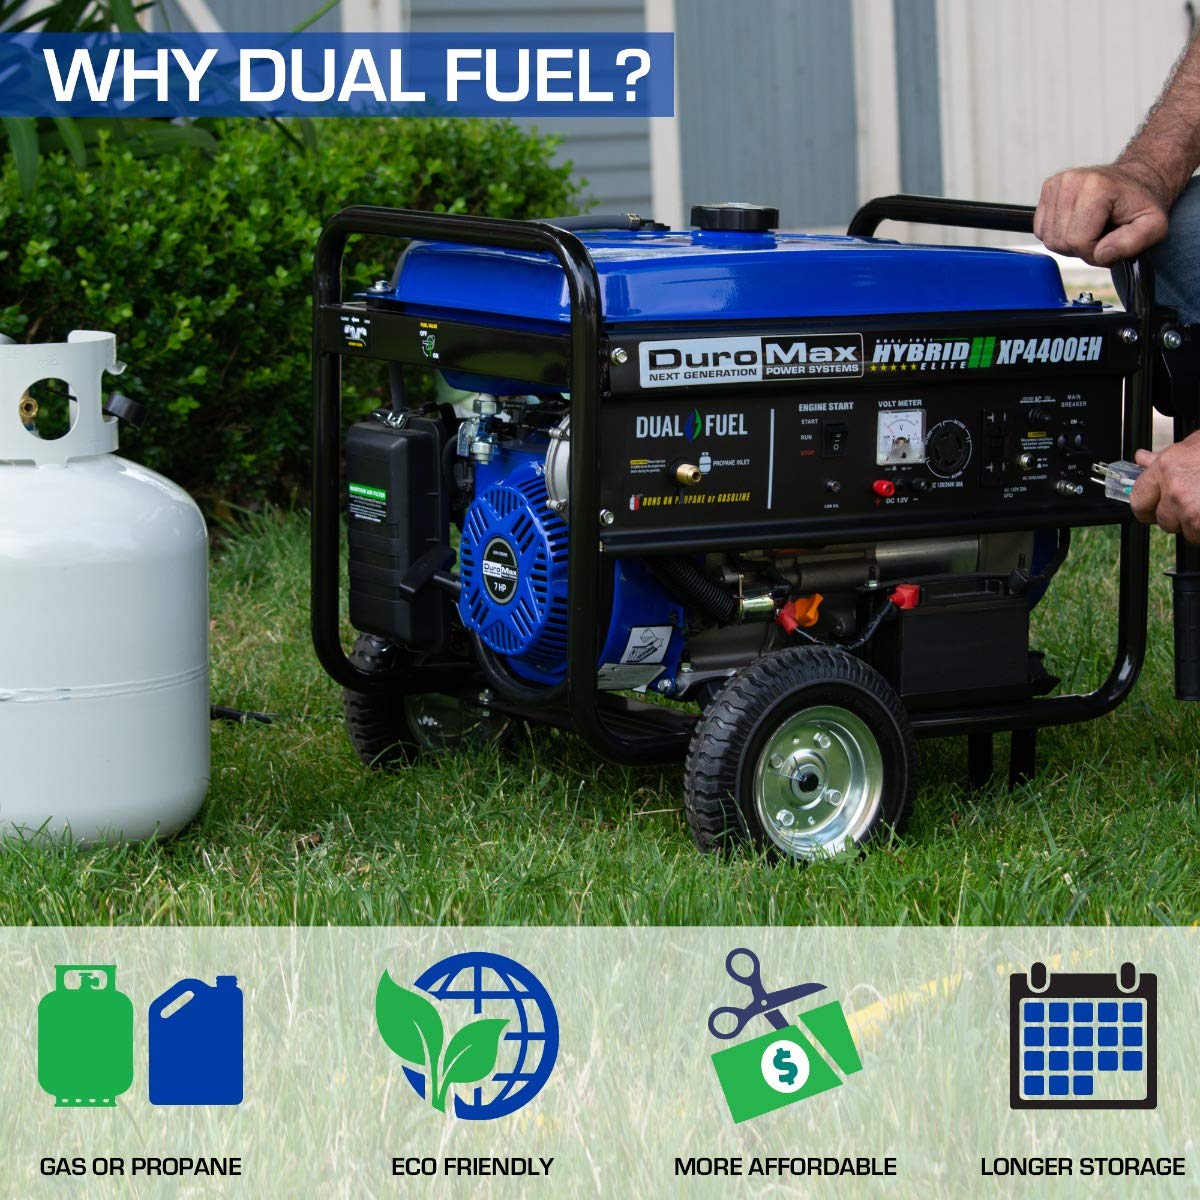 DuroMax XP4400EH Générateur portable bicarburant - 4400 watts alimenté au gaz ou au propane avec démarrage électrique